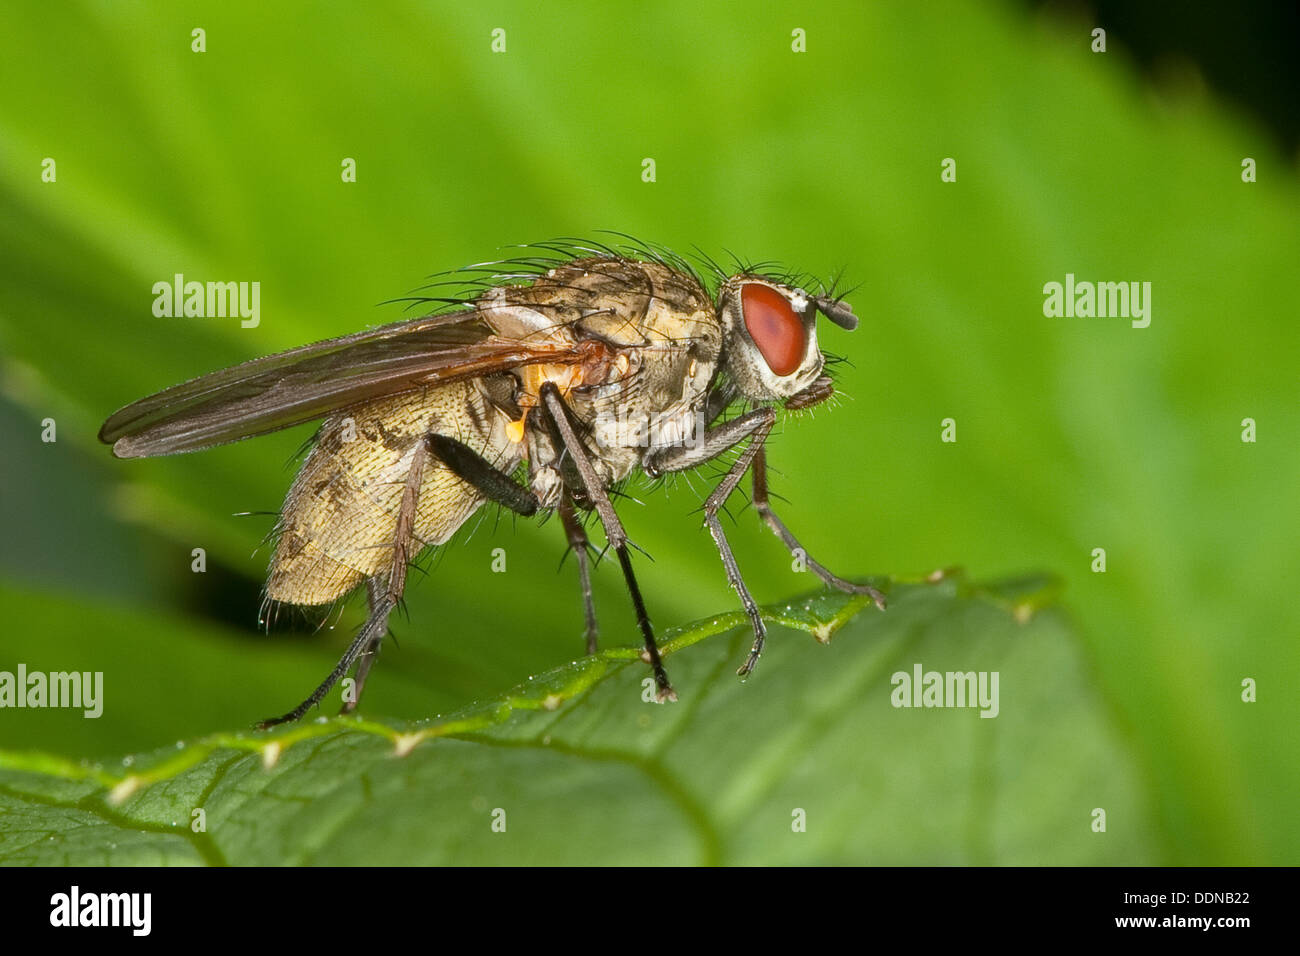 flower fly, flower flies, Blumenfliege, Hydrophoria lancifer, Blumenfliegen, Anthomyiidae, anthomyids Stock Photo